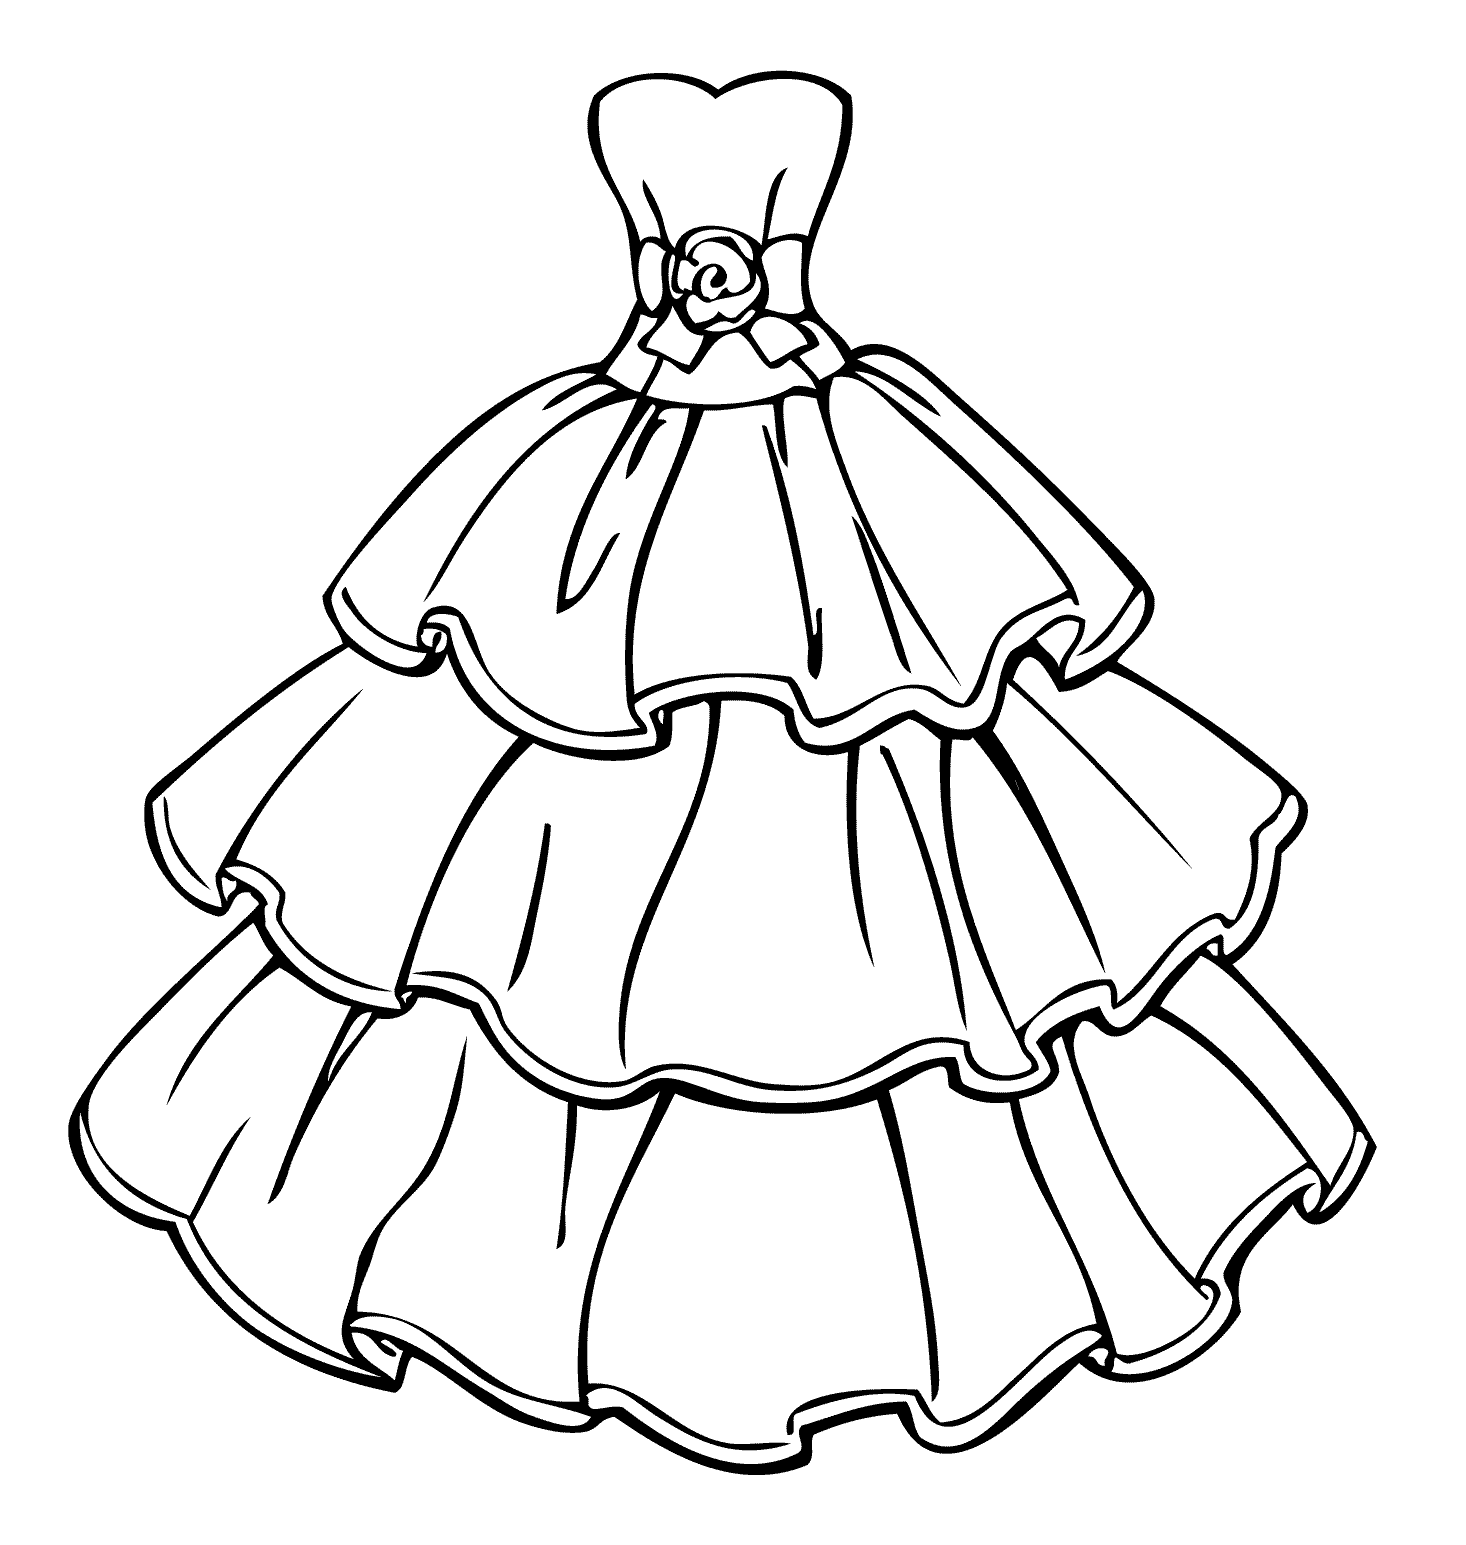 Malvorlagen Mädchen Hochzeitskleid